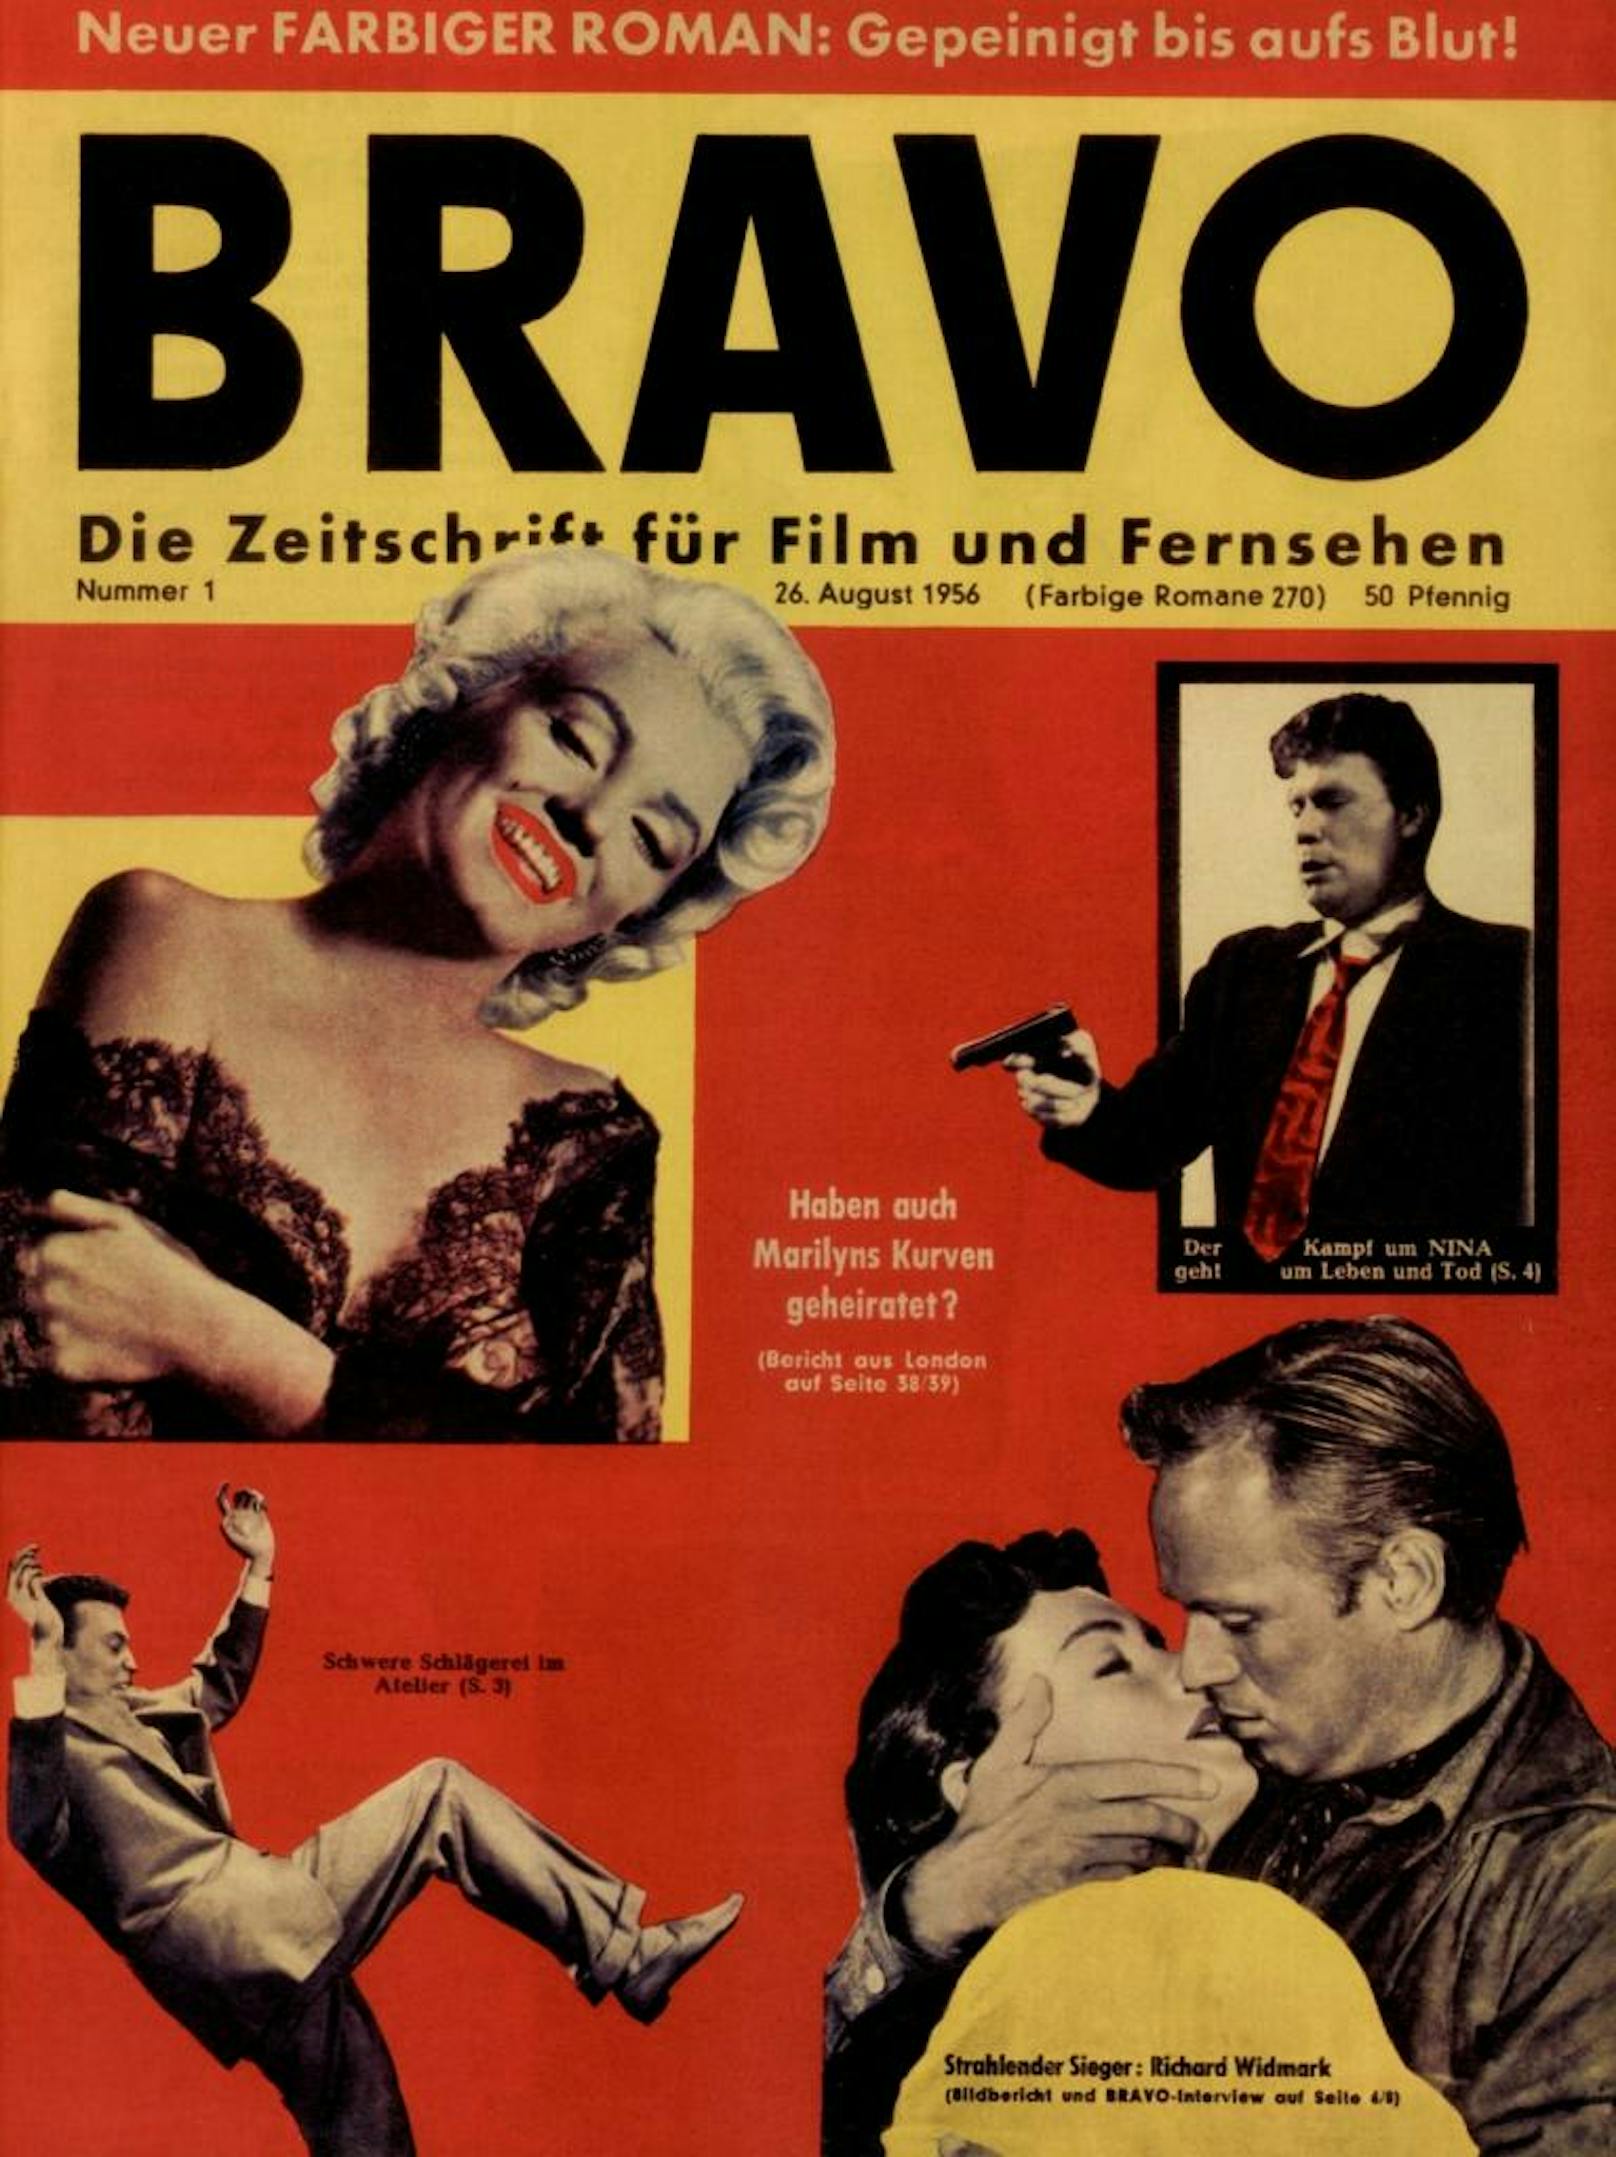 Die ersten BRAVO-Coverstars 1956 waren Marilyn Monroe und Richard Widmark